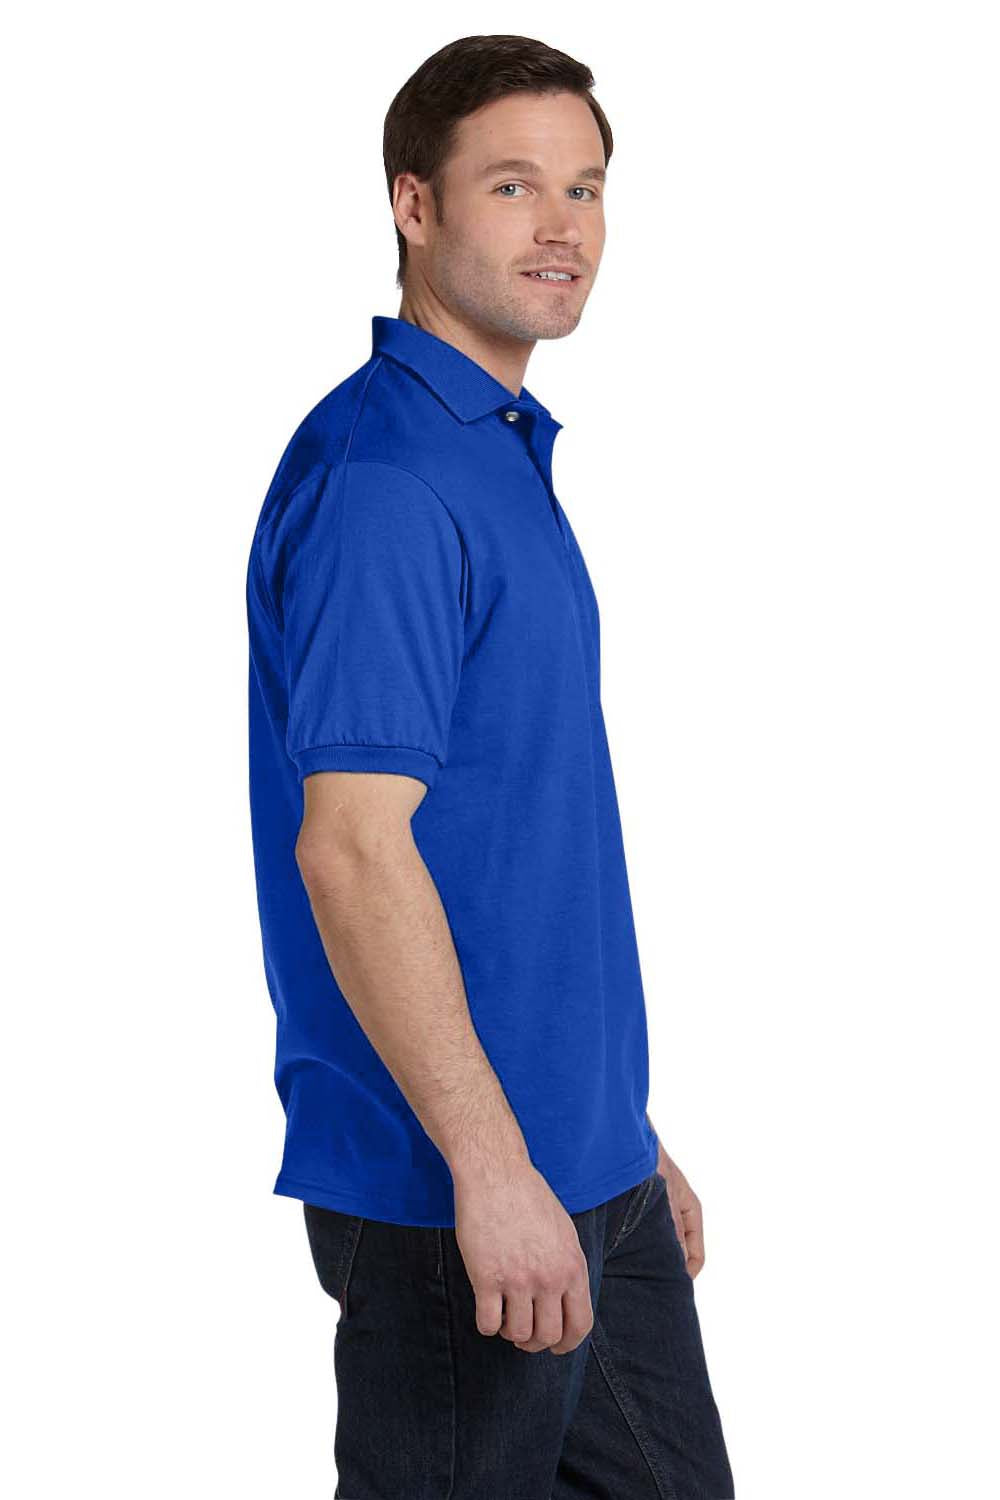 Hanes 054 Mens EcoSmart Short Sleeve Polo Shirt Royal Blue Side